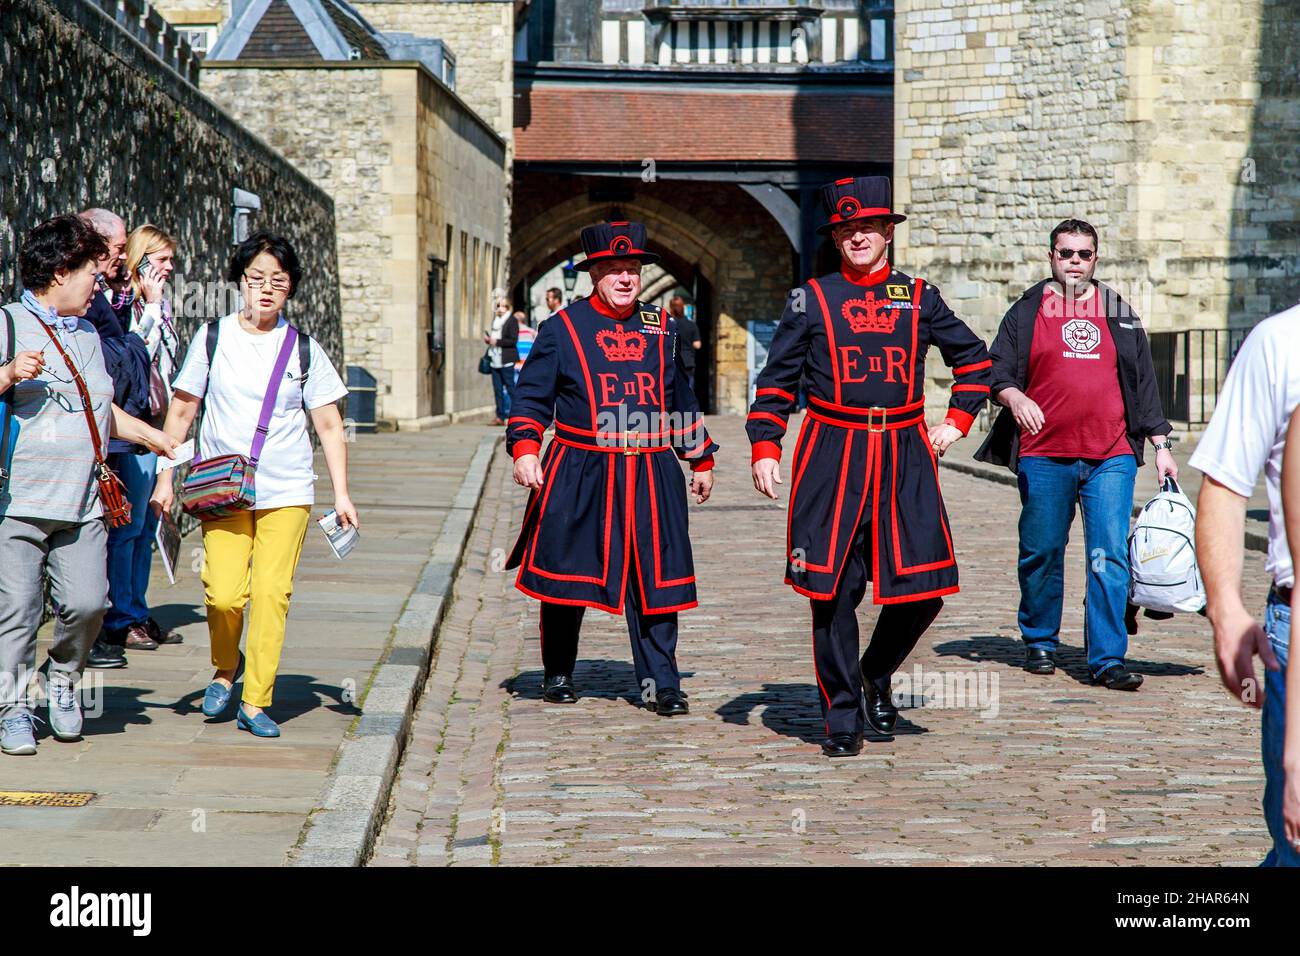 LONDON, GROSSBRITANNIEN - 16. MAI 2014: Dies sind zeremonielle Wachen (beefeaters) in Alltagsuniform unter Besuchern des Tower of London. Stockfoto